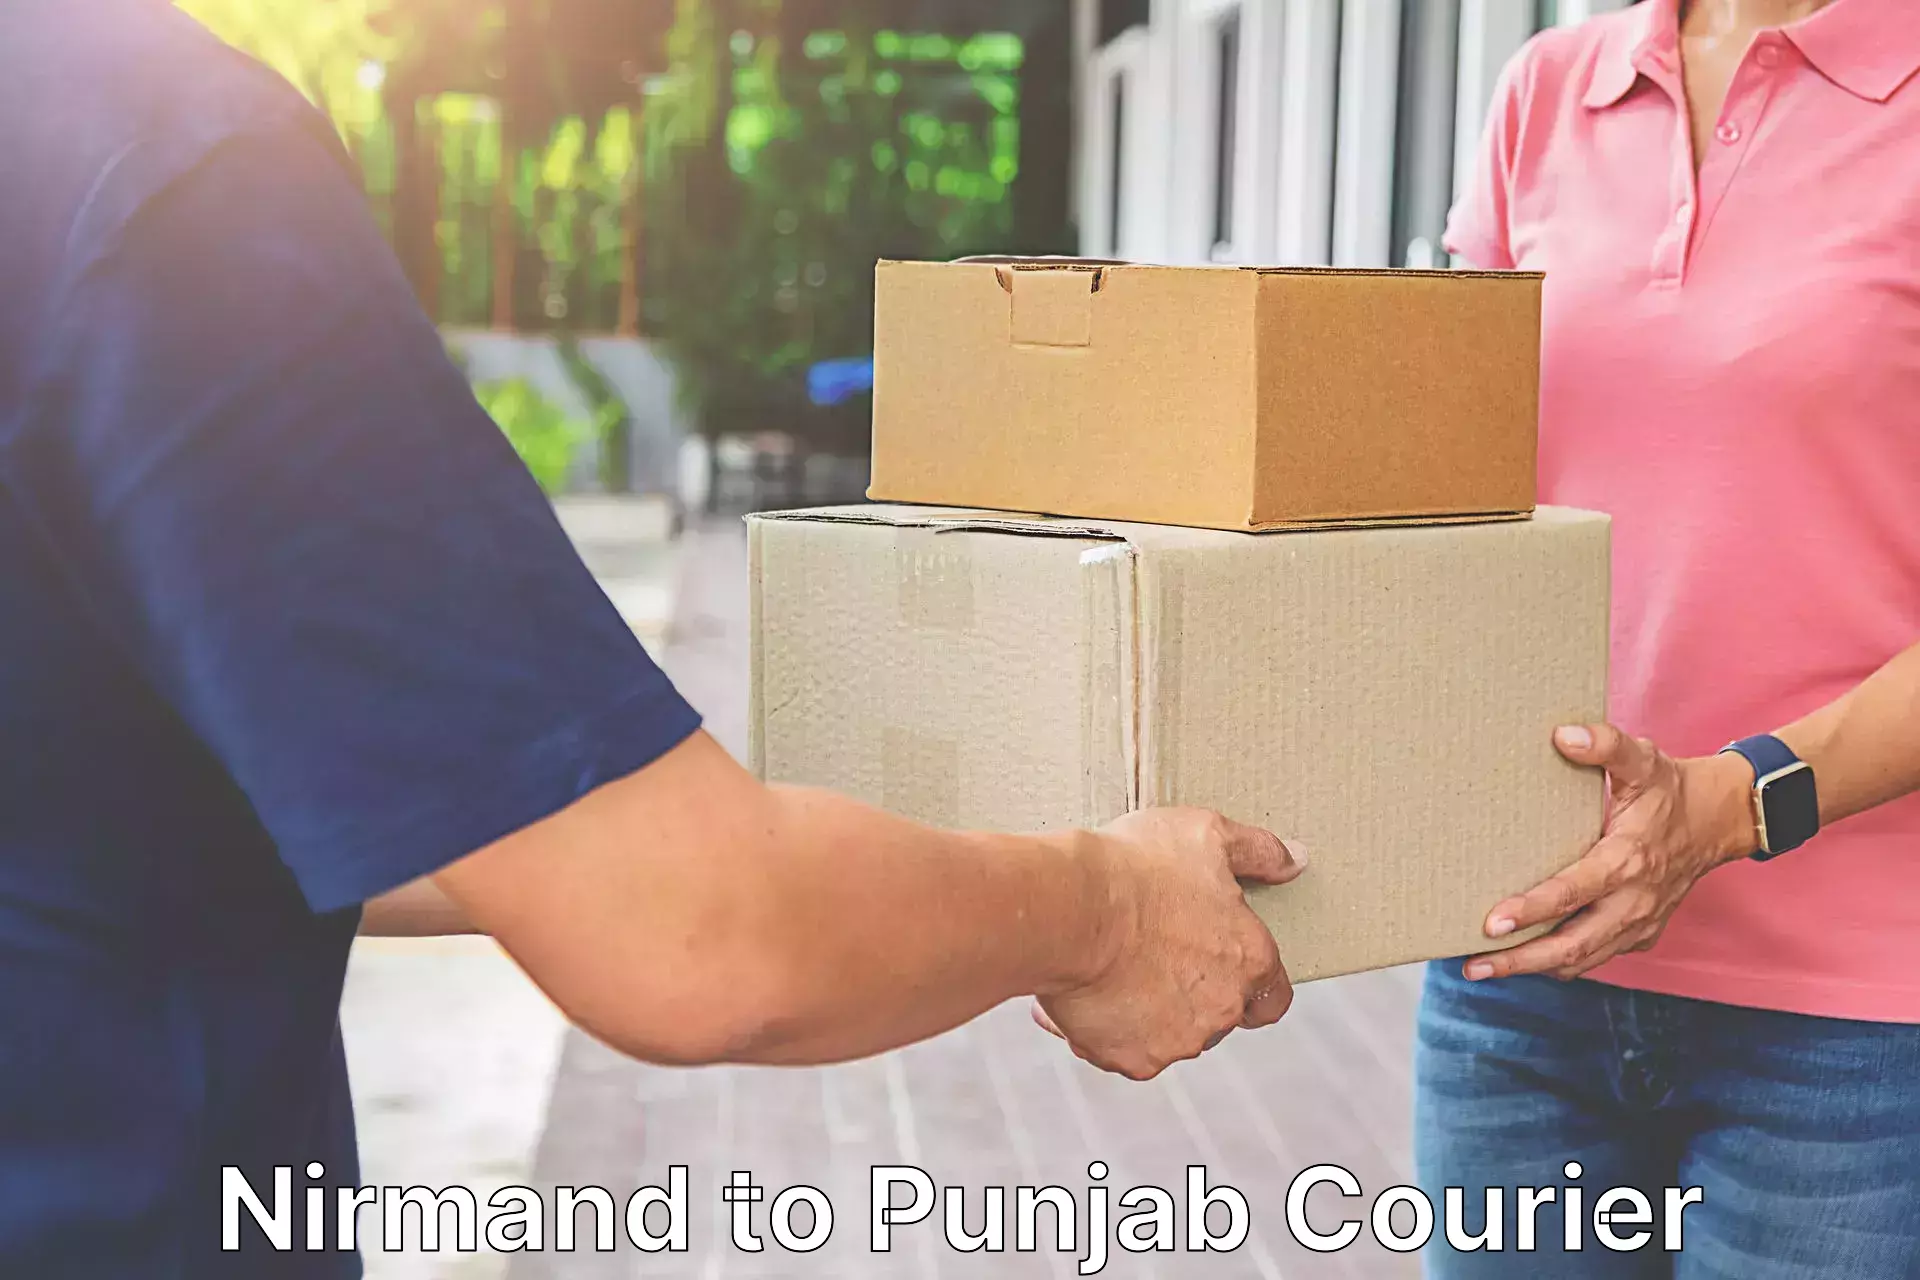 Quick parcel dispatch Nirmand to Punjab